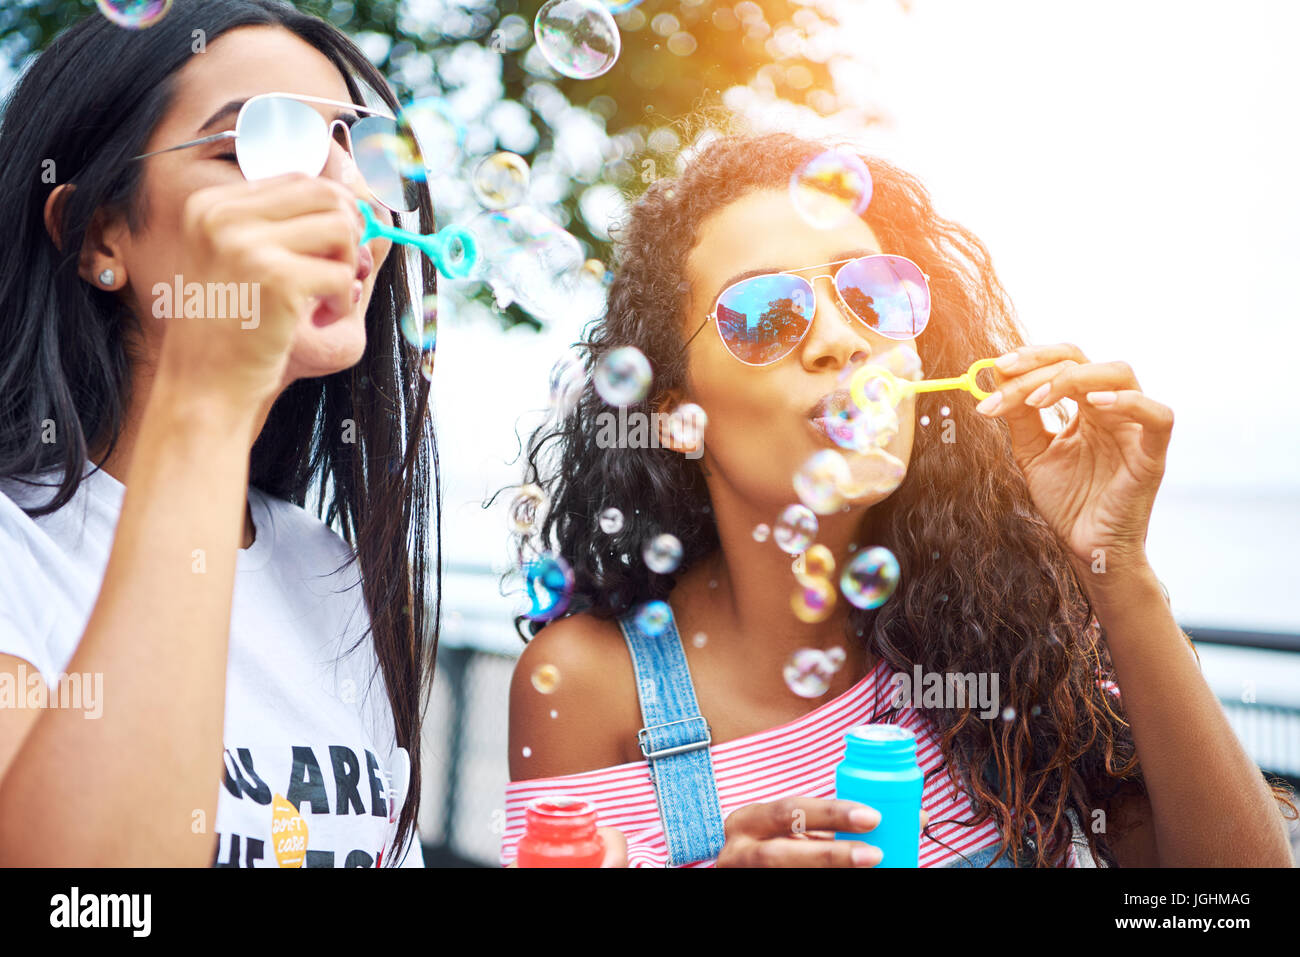 Zwei unbeschwerte junge Freundinnen Spaß zusammen mit einem Spielzeug Blase Wand sprudelt weht, genießen einen sonnigen Tag zusammen draußen Stockfoto